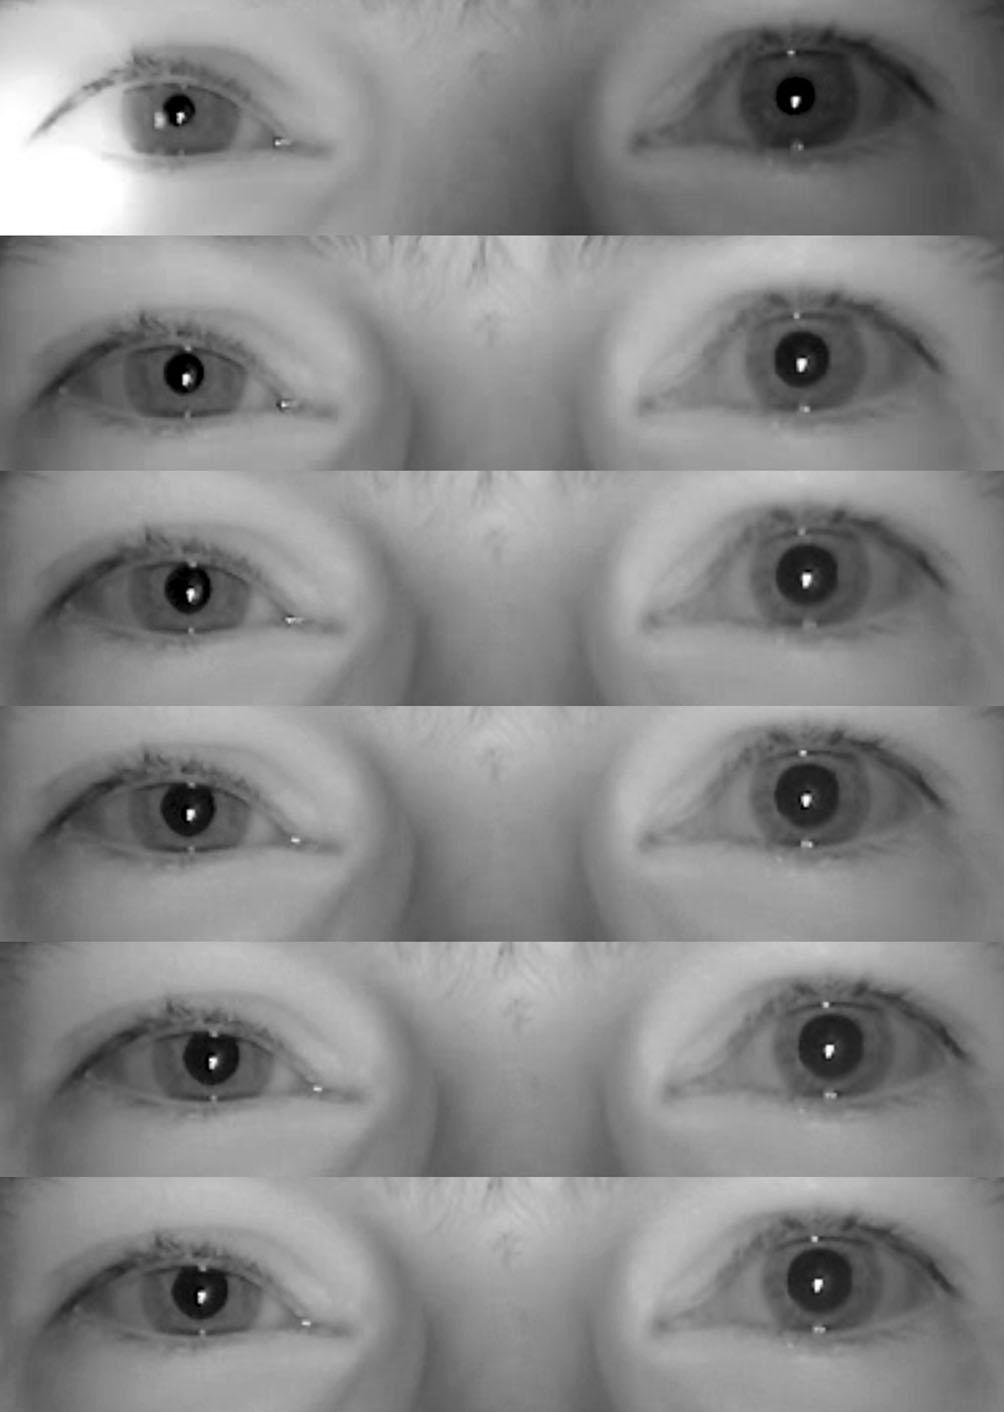 Abb. 2 9 Horner-Syndrom: Ausschnitte aus einem Infrarotvideo im Abstand von 3 s. Im obersten Bild sieht man noch den Lichtkegel, der vonderpupille wegbewegtwird.die normale linke Pupille hat im 3.